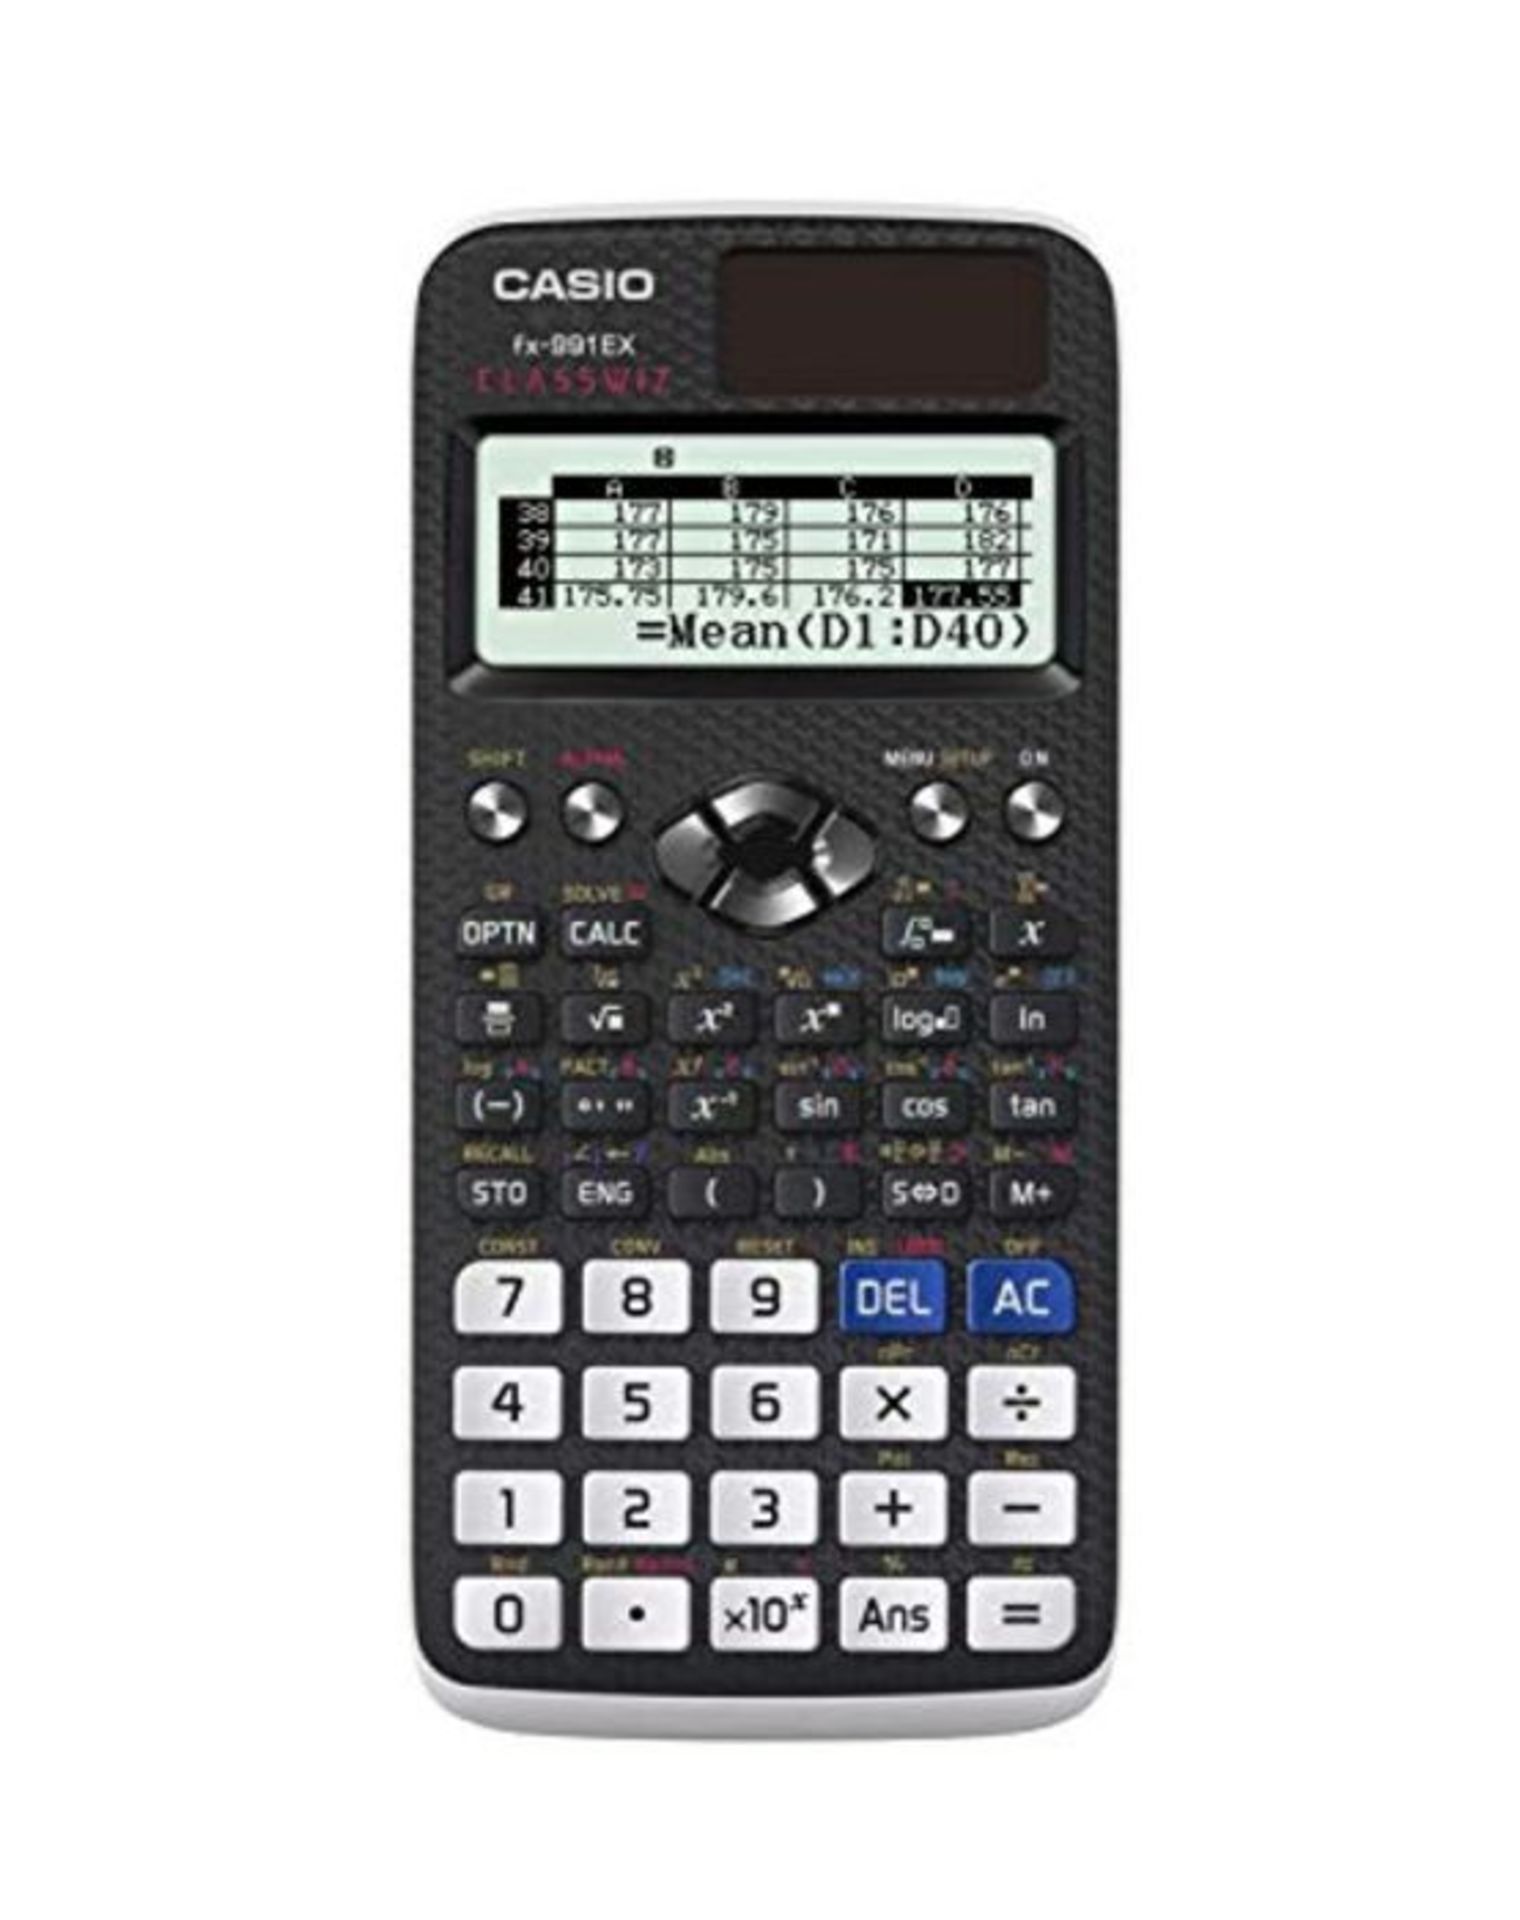 CASIO FX-991EX calcolatrice scientifica - 552 funzioni, doppia alimentazione